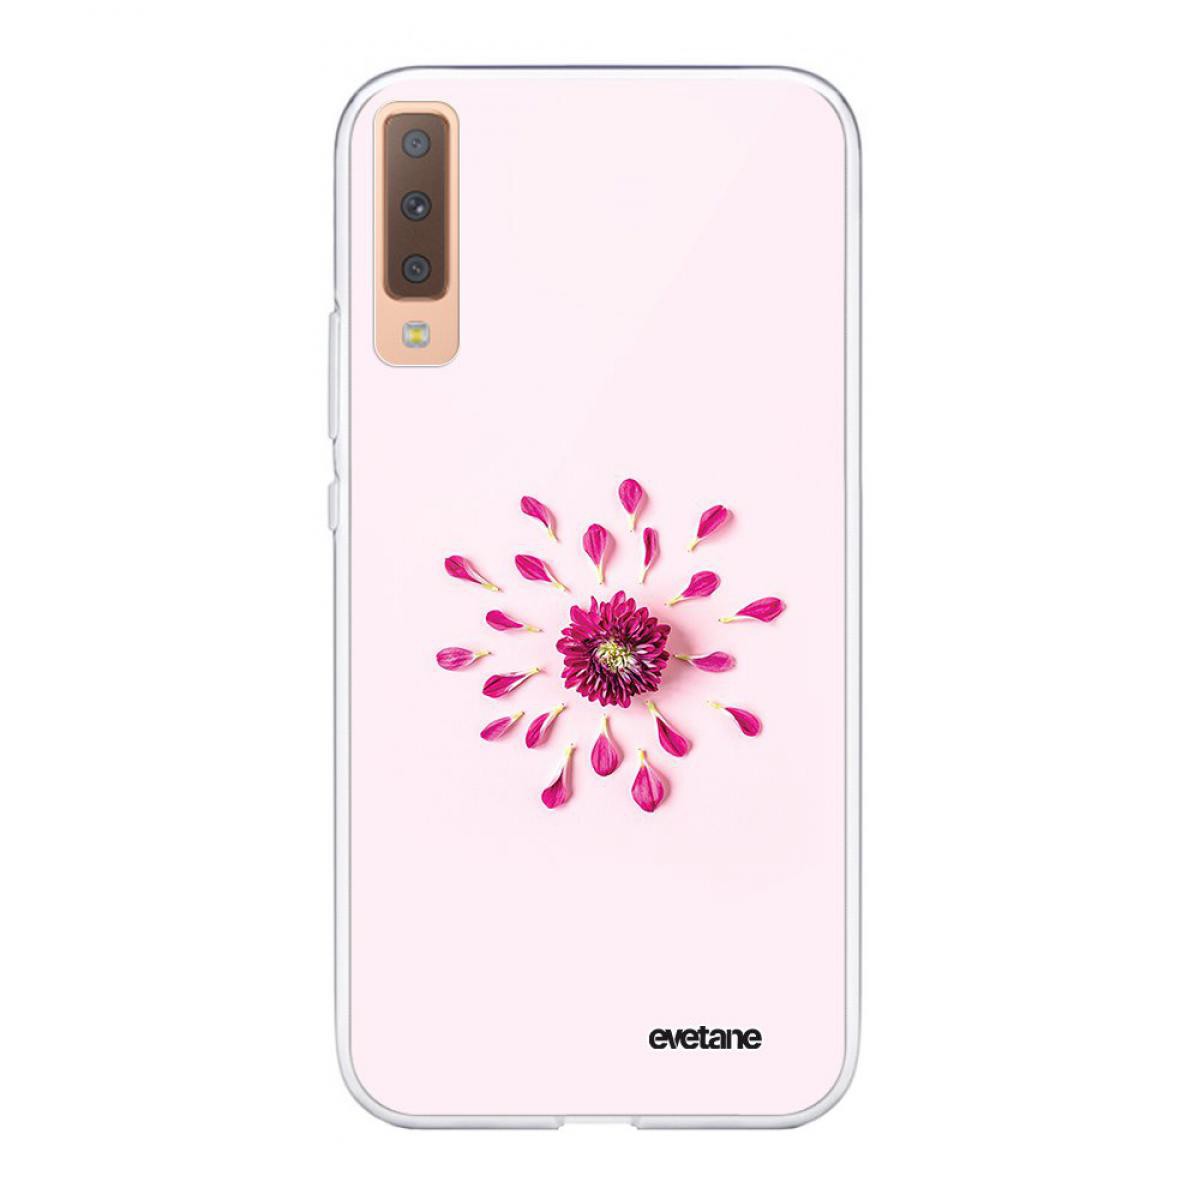 Evetane - Coque Samsung Galaxy A7 2018 souple transparente Fleur Rose Fushia Motif Ecriture Tendance Evetane. - Coque, étui smartphone